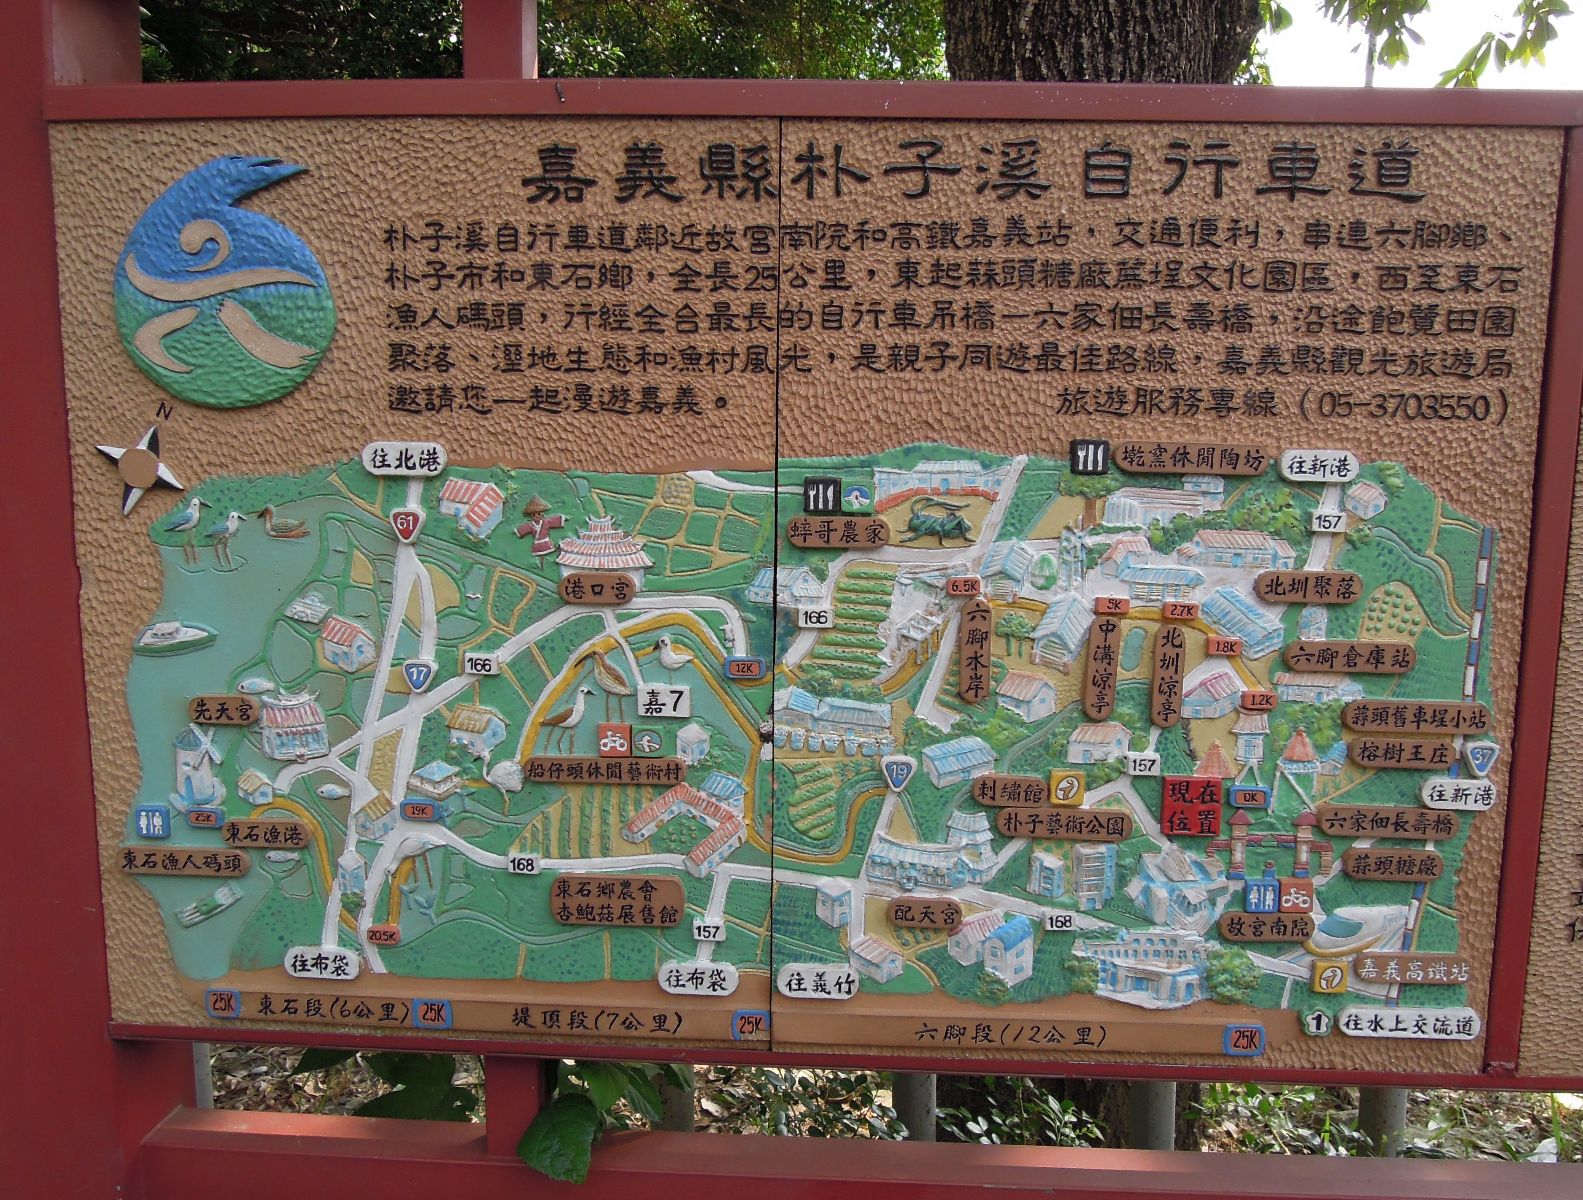 朴子溪自行車道指引地圖